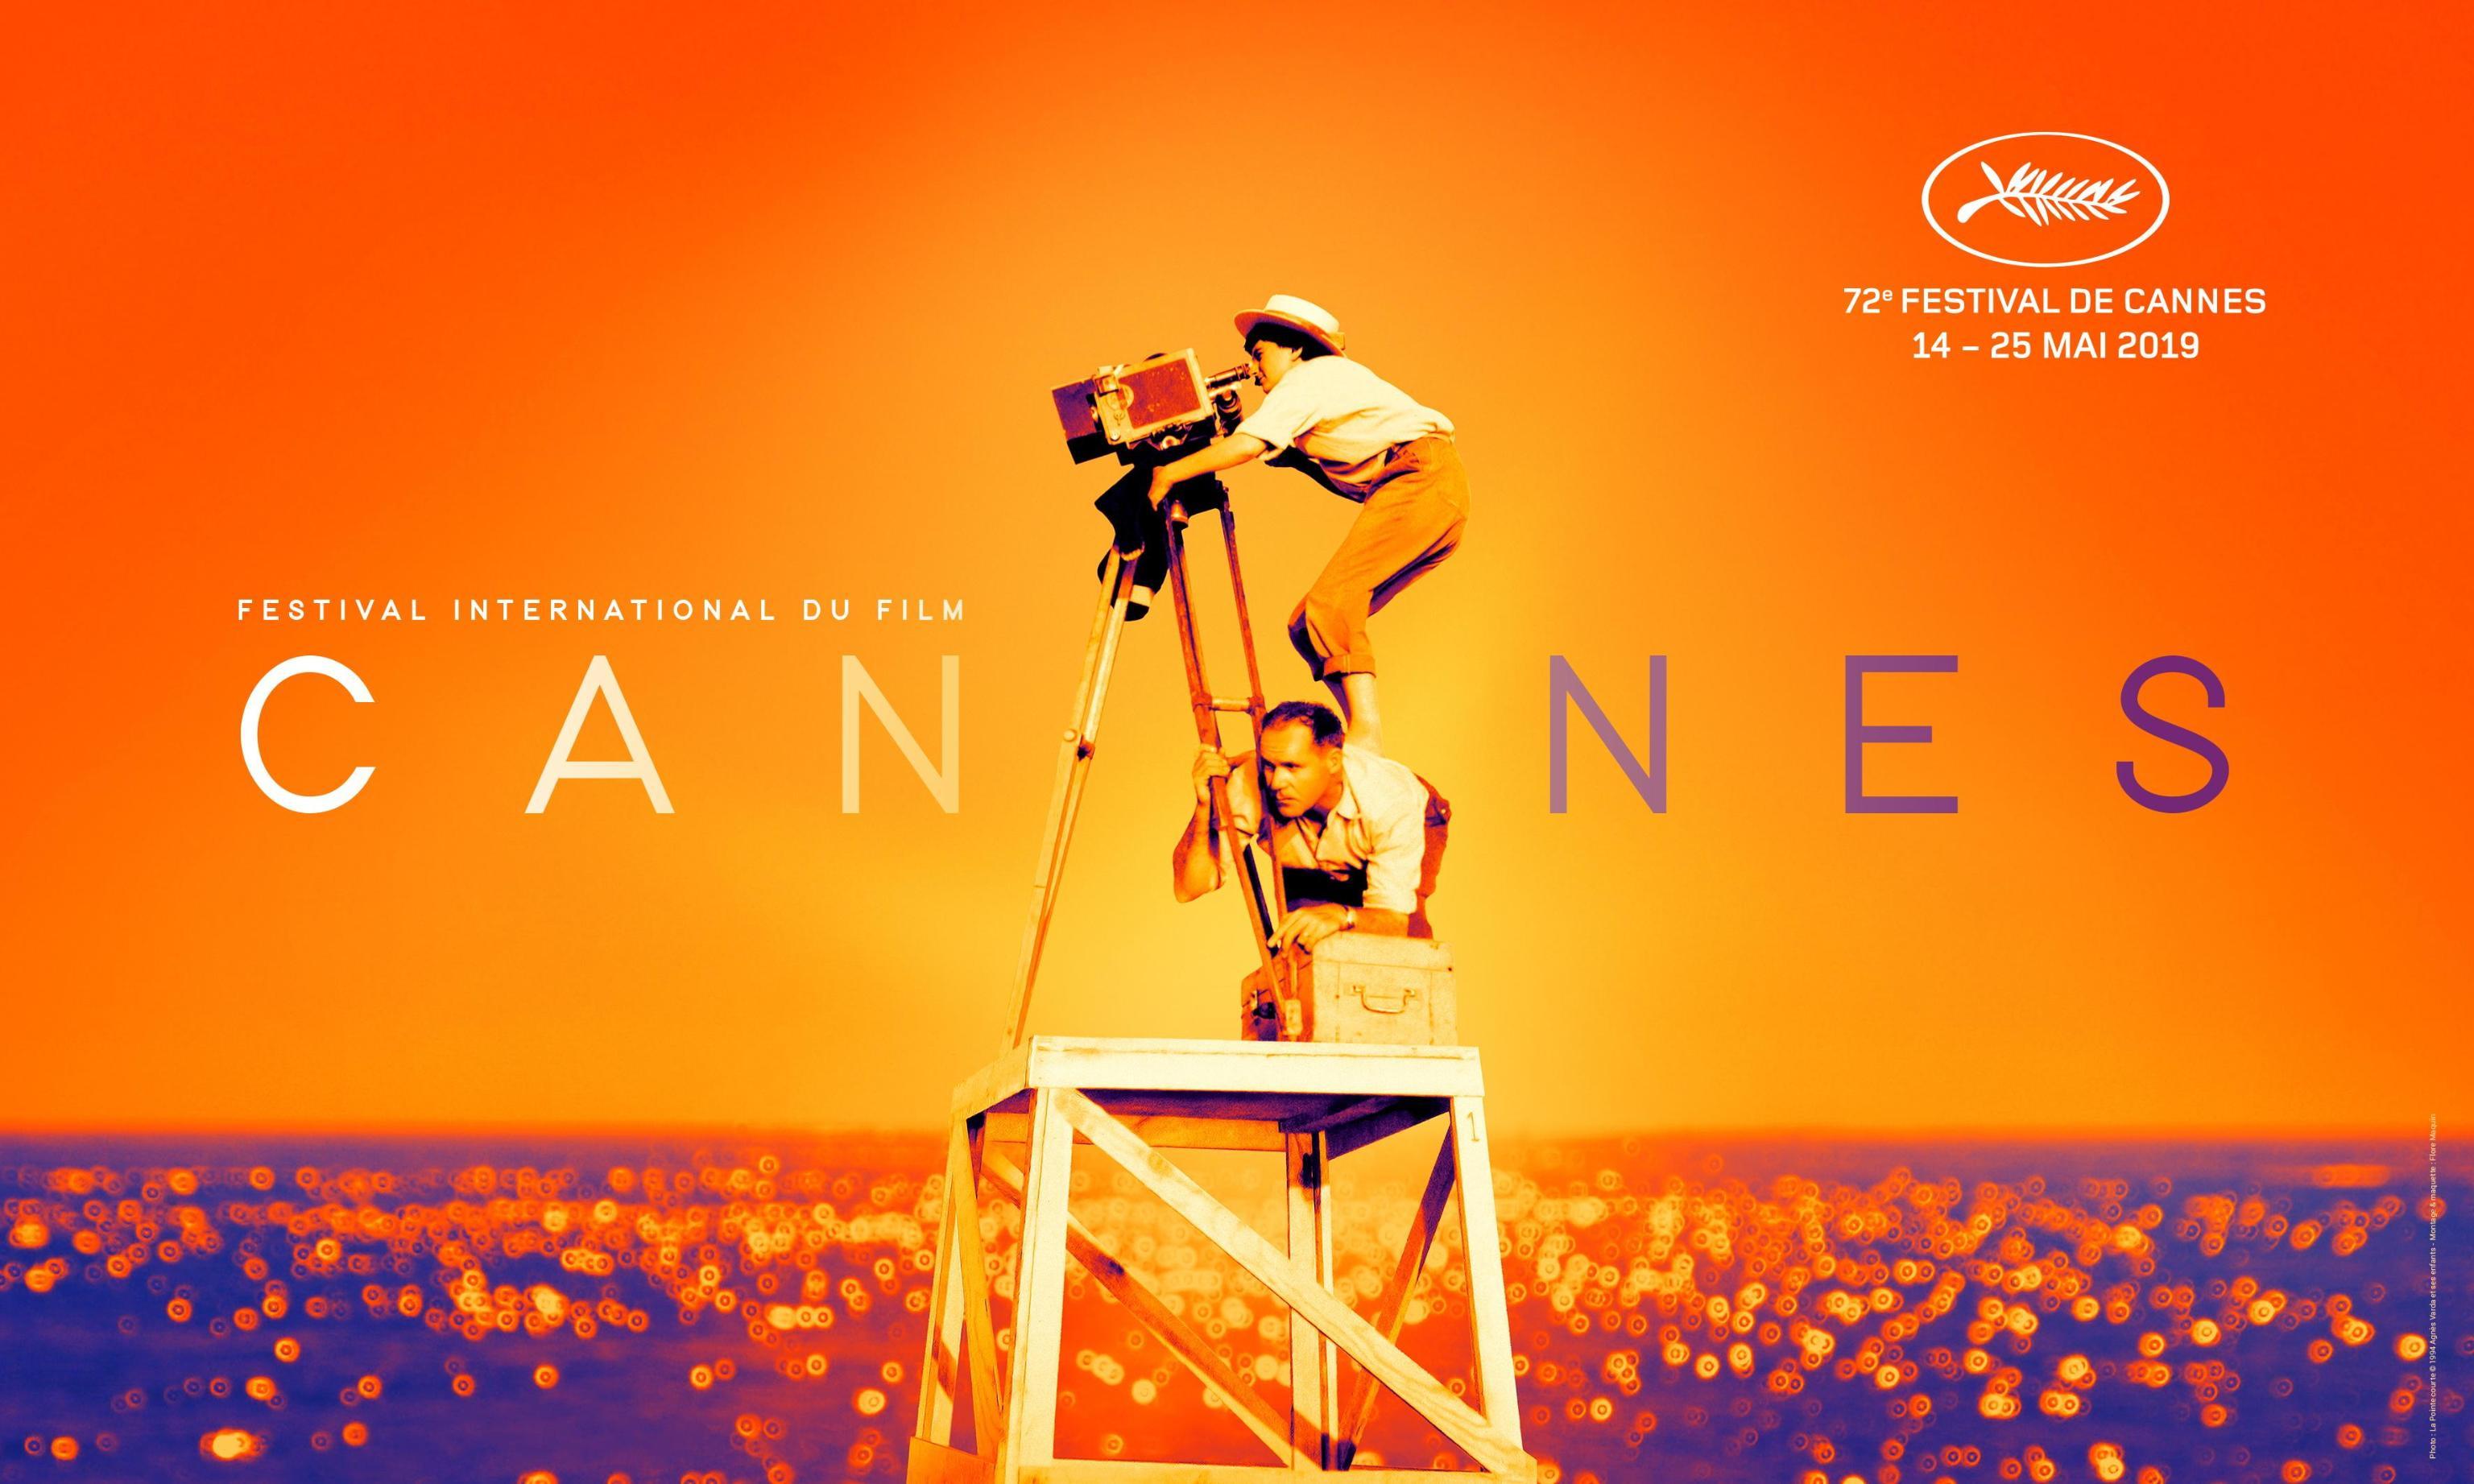 La storia dietro l'immagine nel poster ufficiale del Festival di Cannes